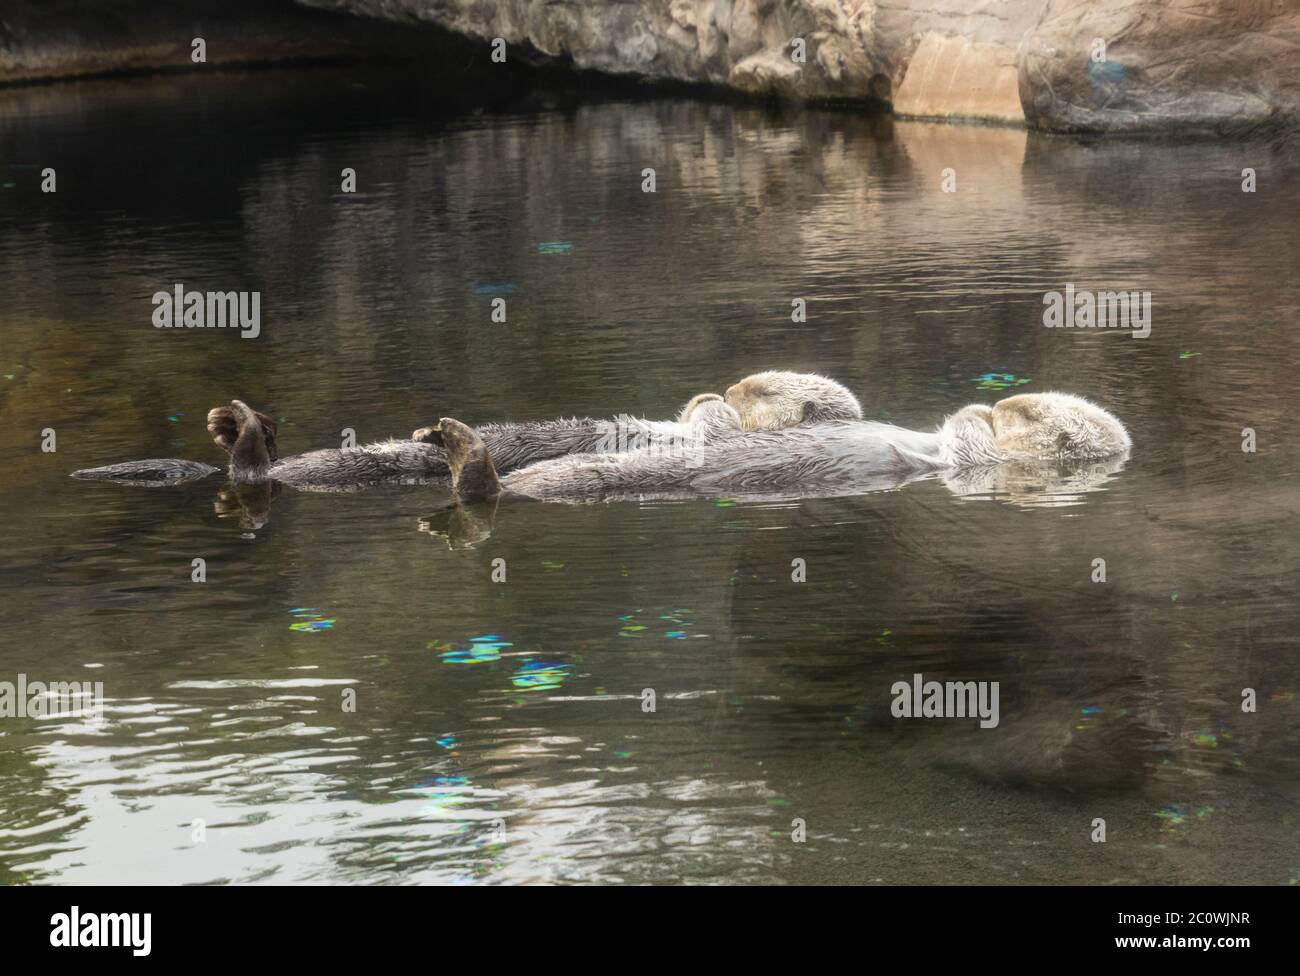 Zwei Seeotter schlafen, während sie auf dem Rücken im Wasser schwimmen Stockfoto